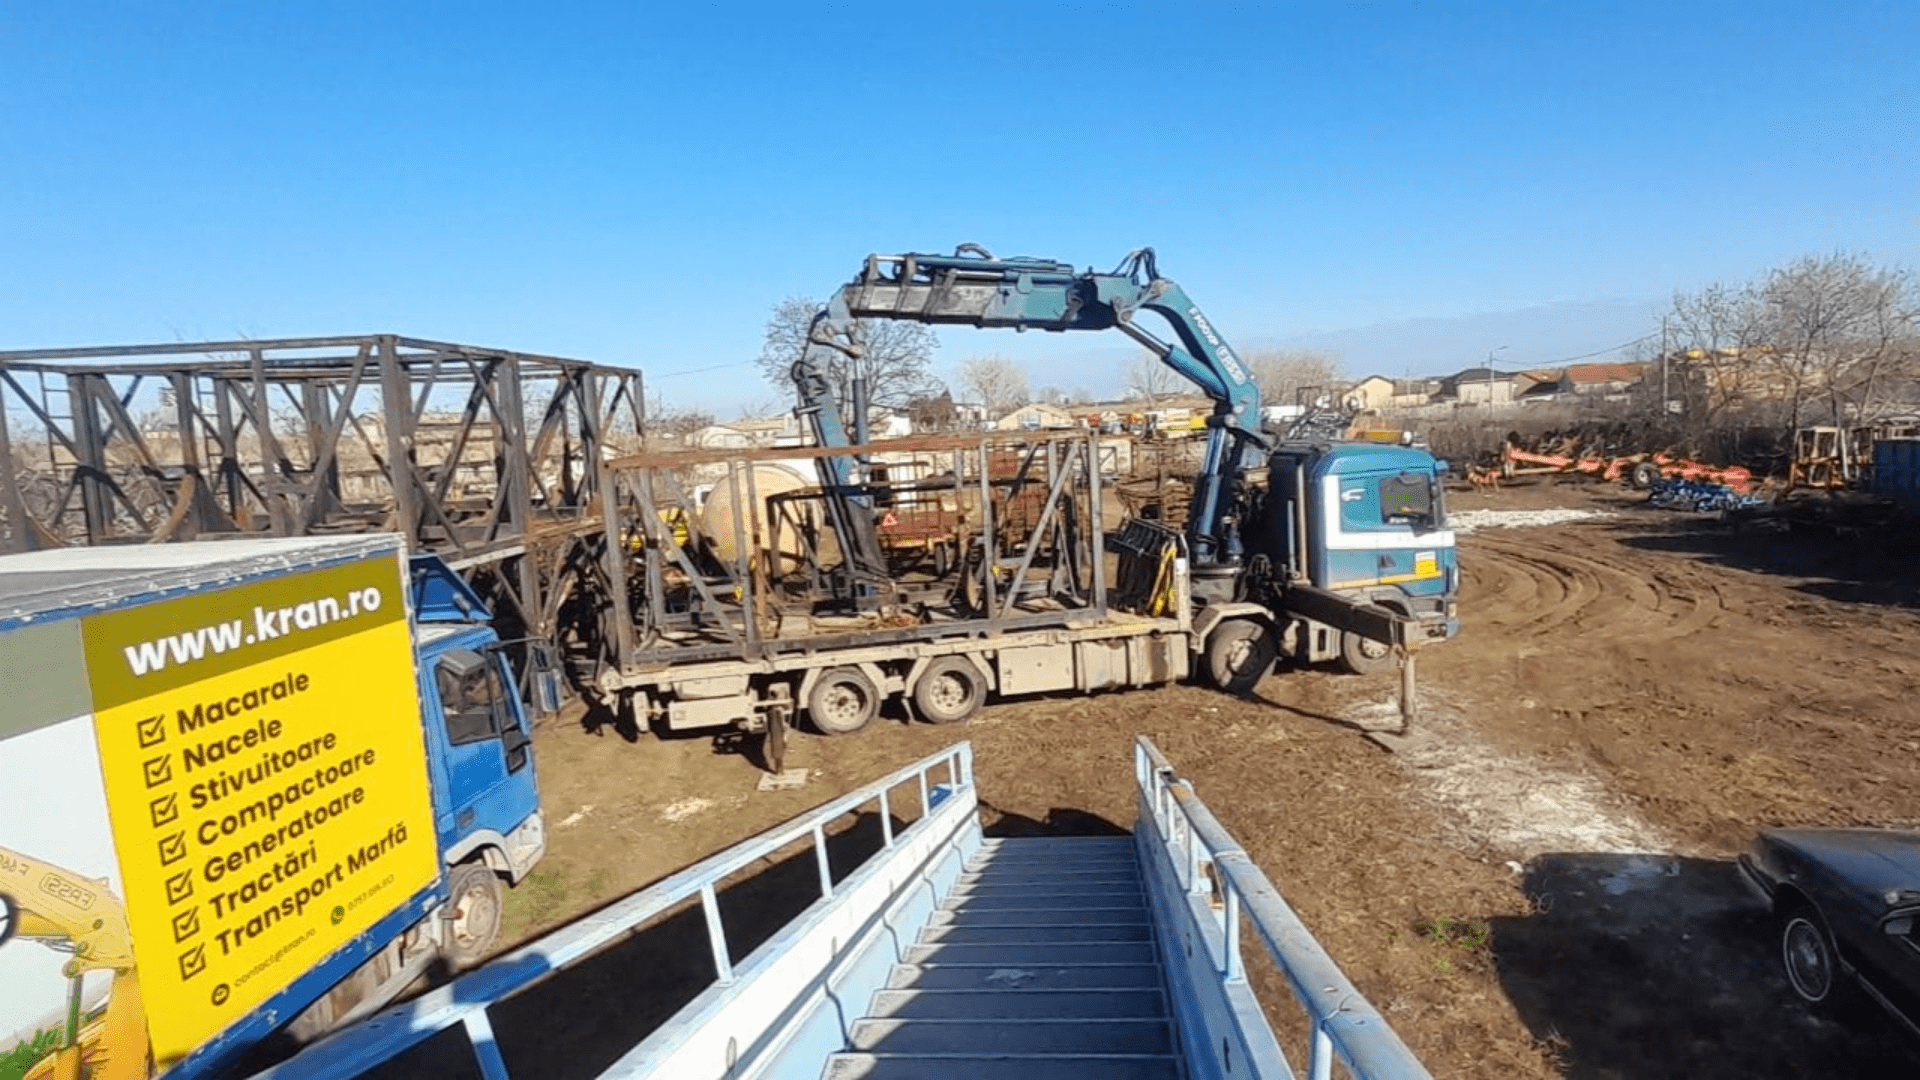 Truck crane rentals lifting metals in Constanta